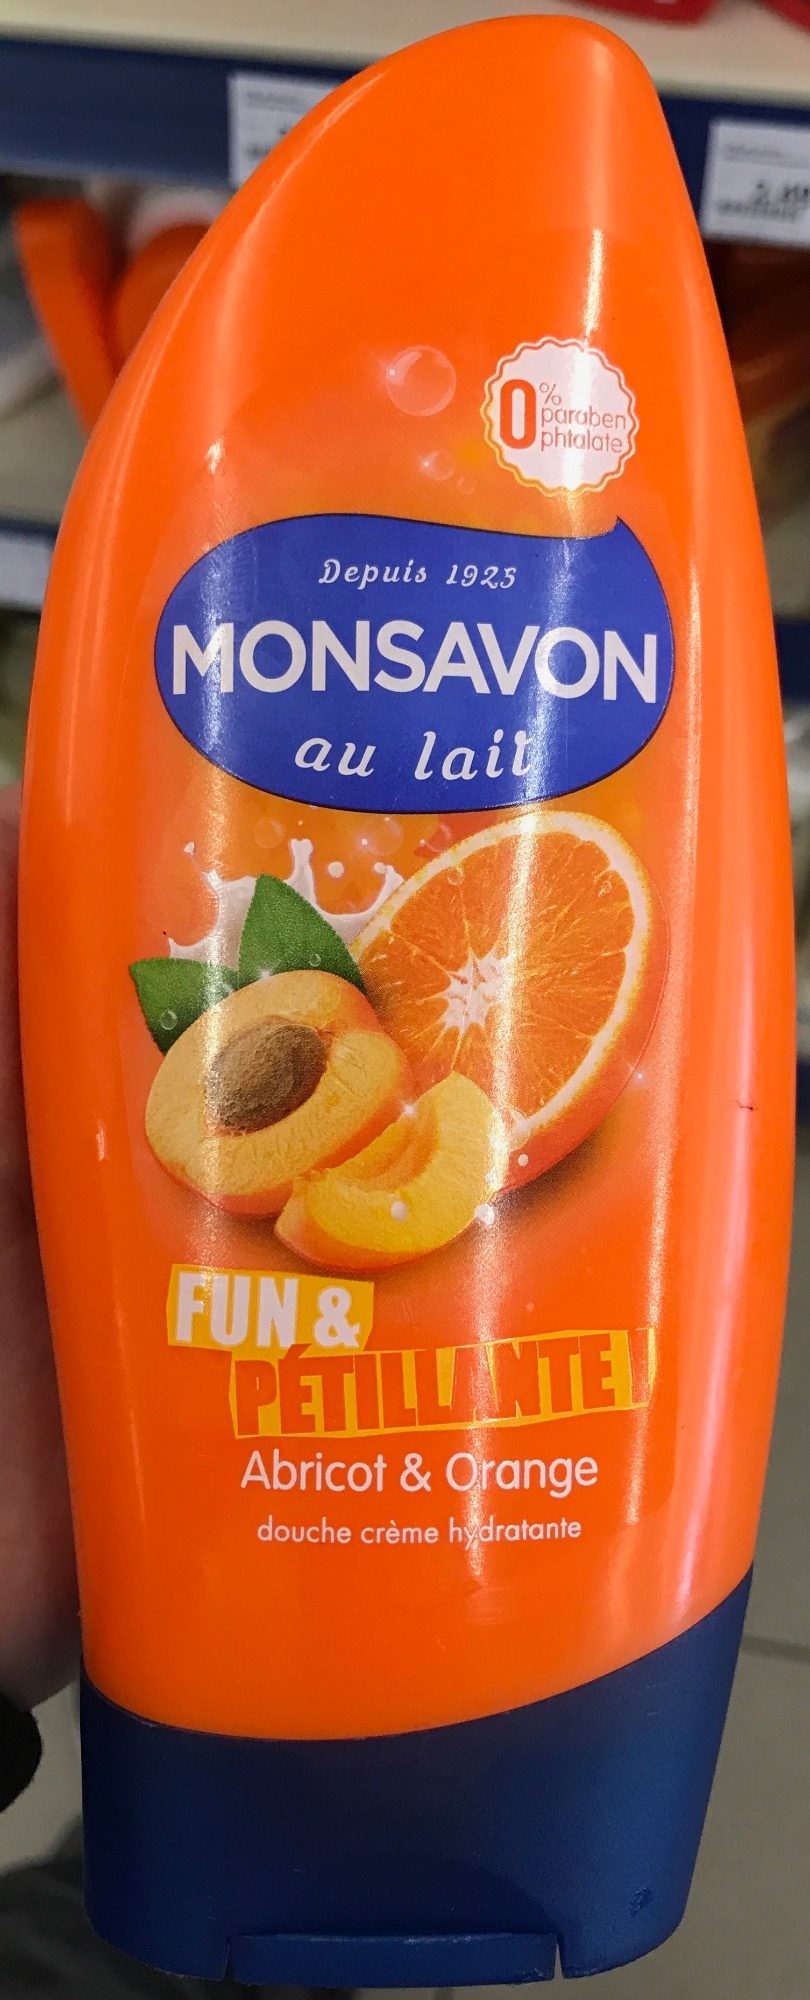 Fun & Pétillante Abricot & Orange - Product - fr